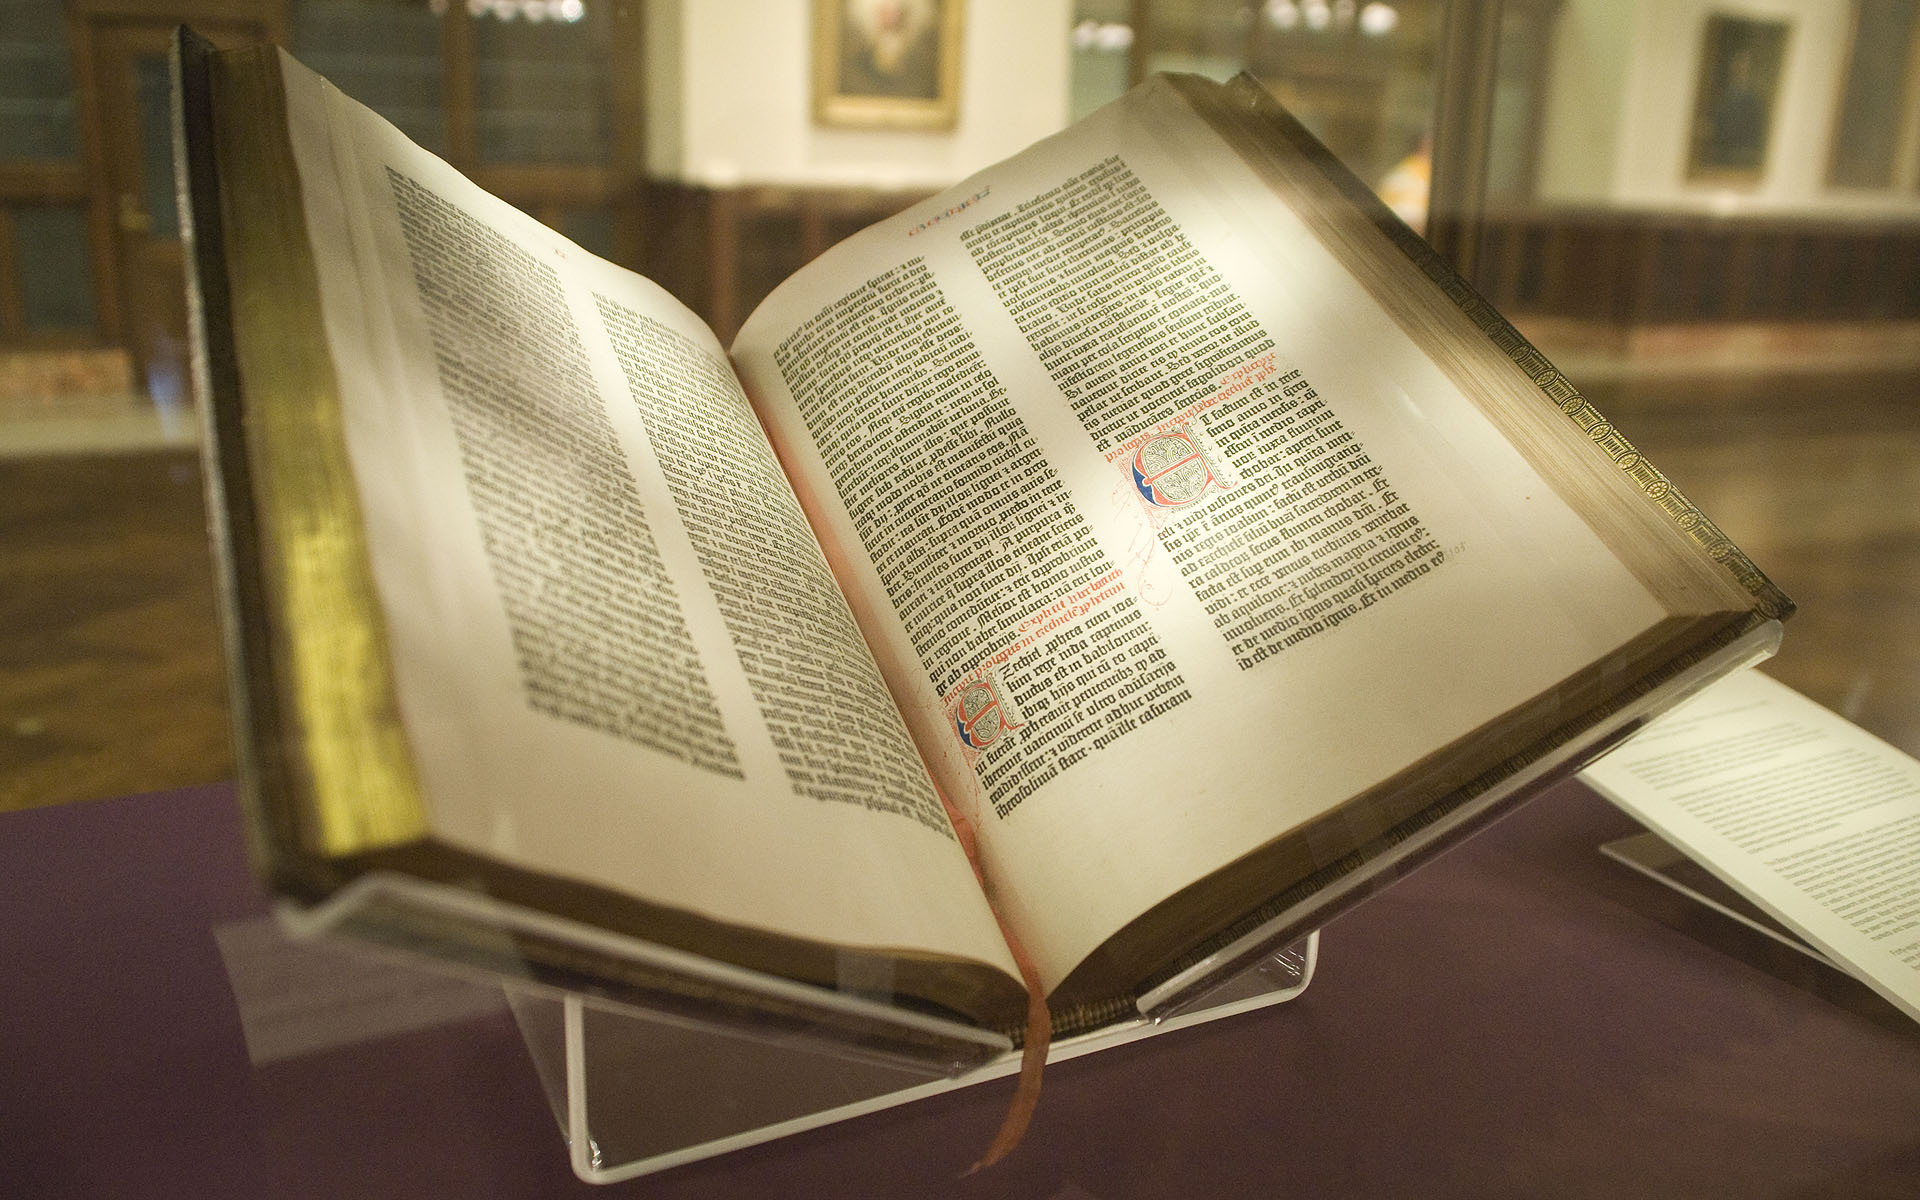 古腾堡圣经。印刷术和《圣经》新版翻译的推出，沉重动摇了教会的释经权。